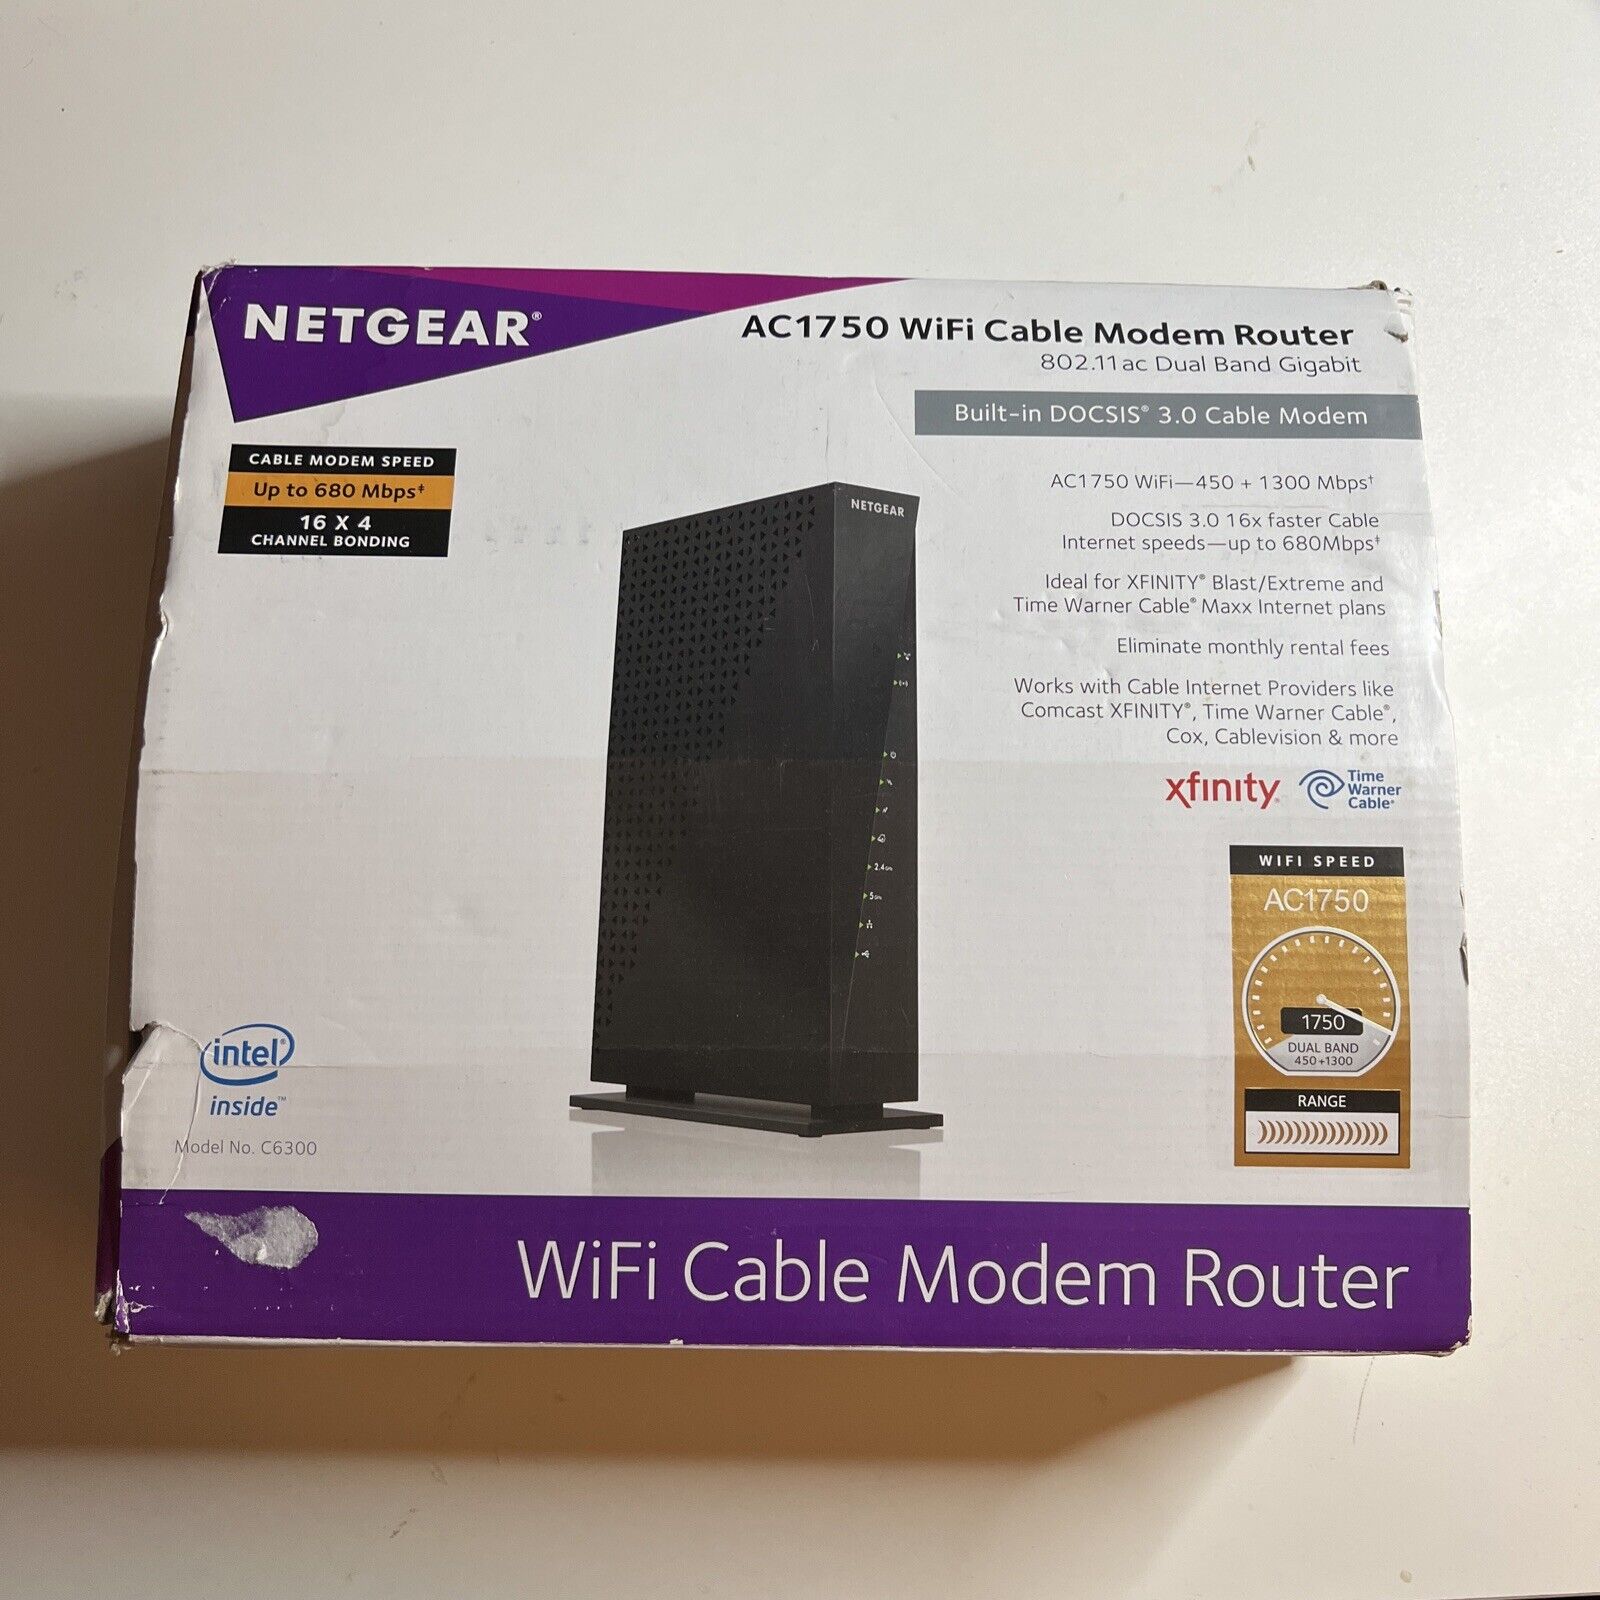 Netgear AC1750 WiFi Cable Modem Router Model No. C6300